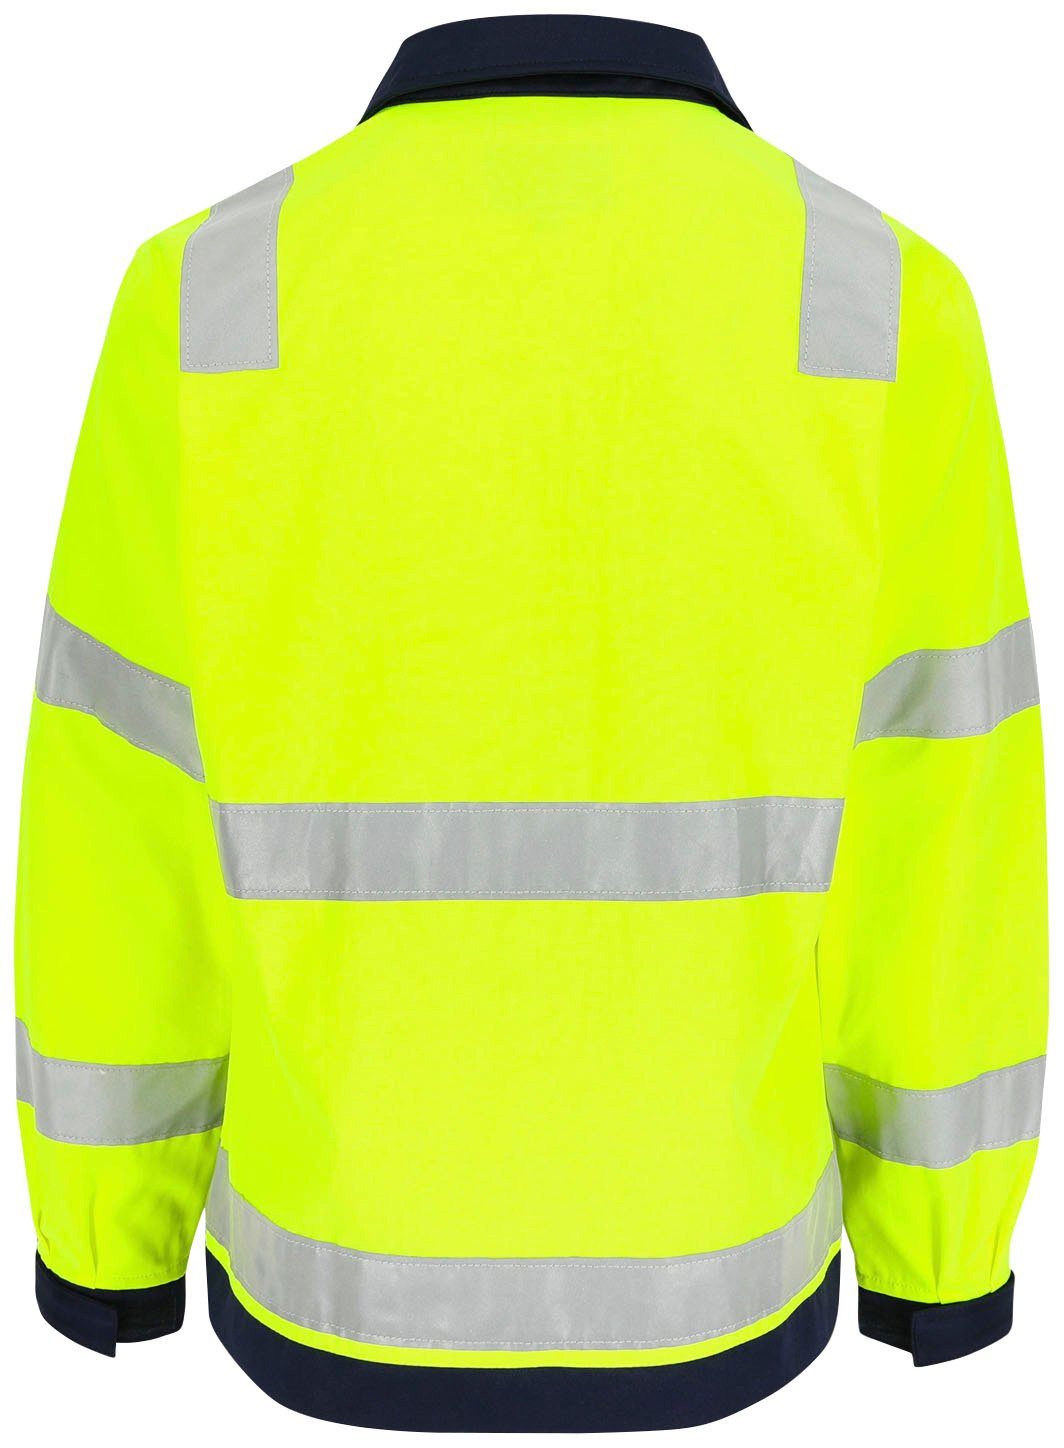 gelb Jacke Arbeitsjacke eintellbare Herock 5cm Bänder 5 Hochsichtbar Hochwertig, Taschen, Hydros reflektierende Bündchen,